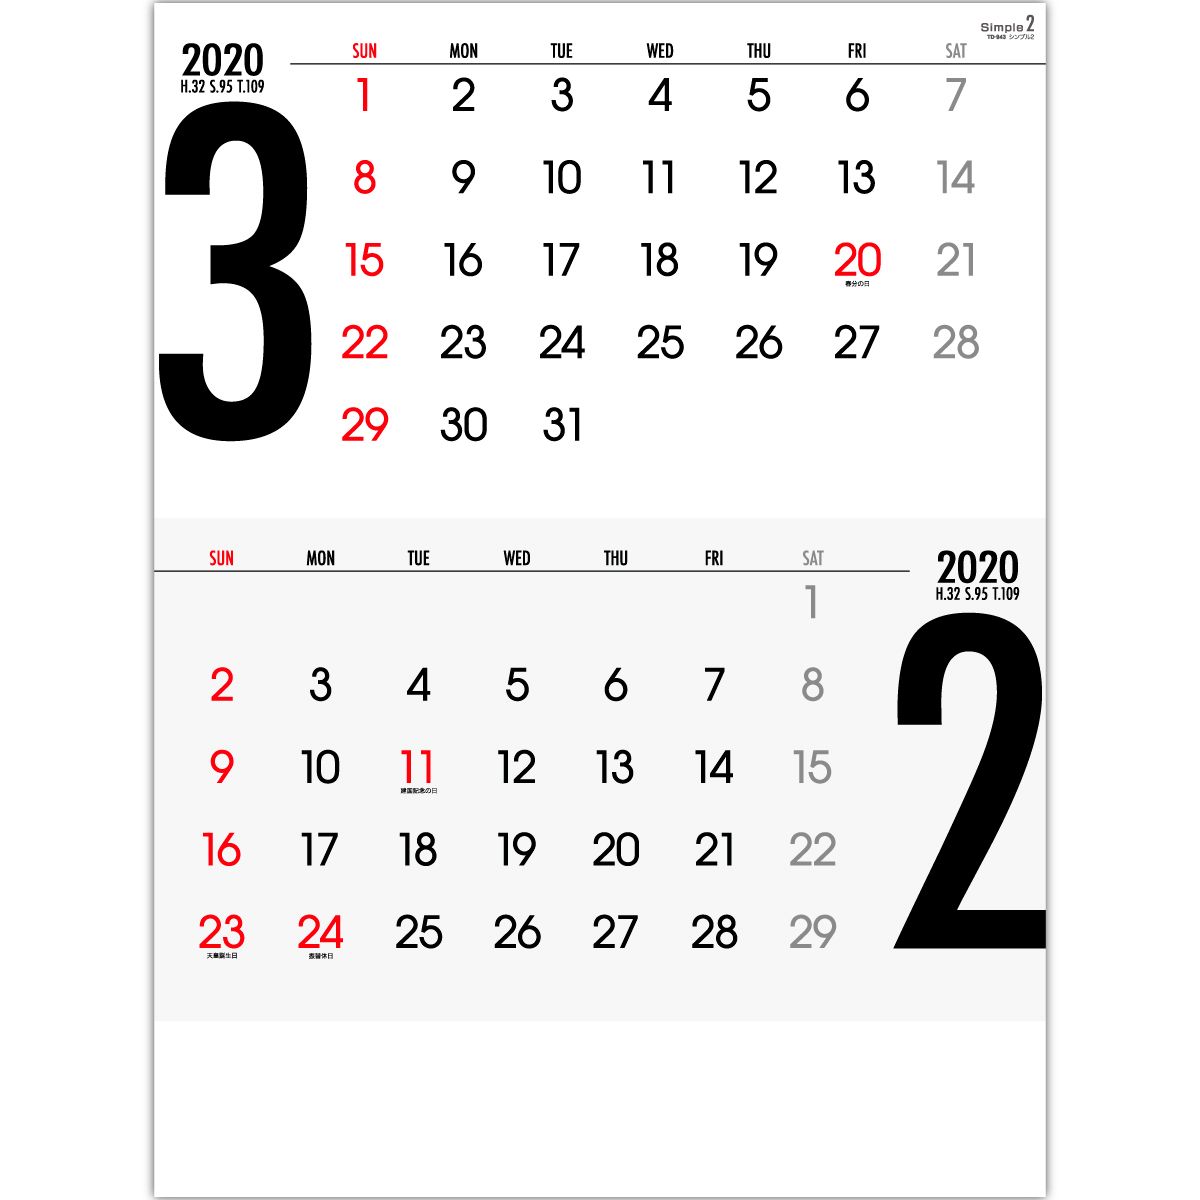 Td943 シンプル2 15ヶ月 2020年カレンダー 文字月表 イラスト無し